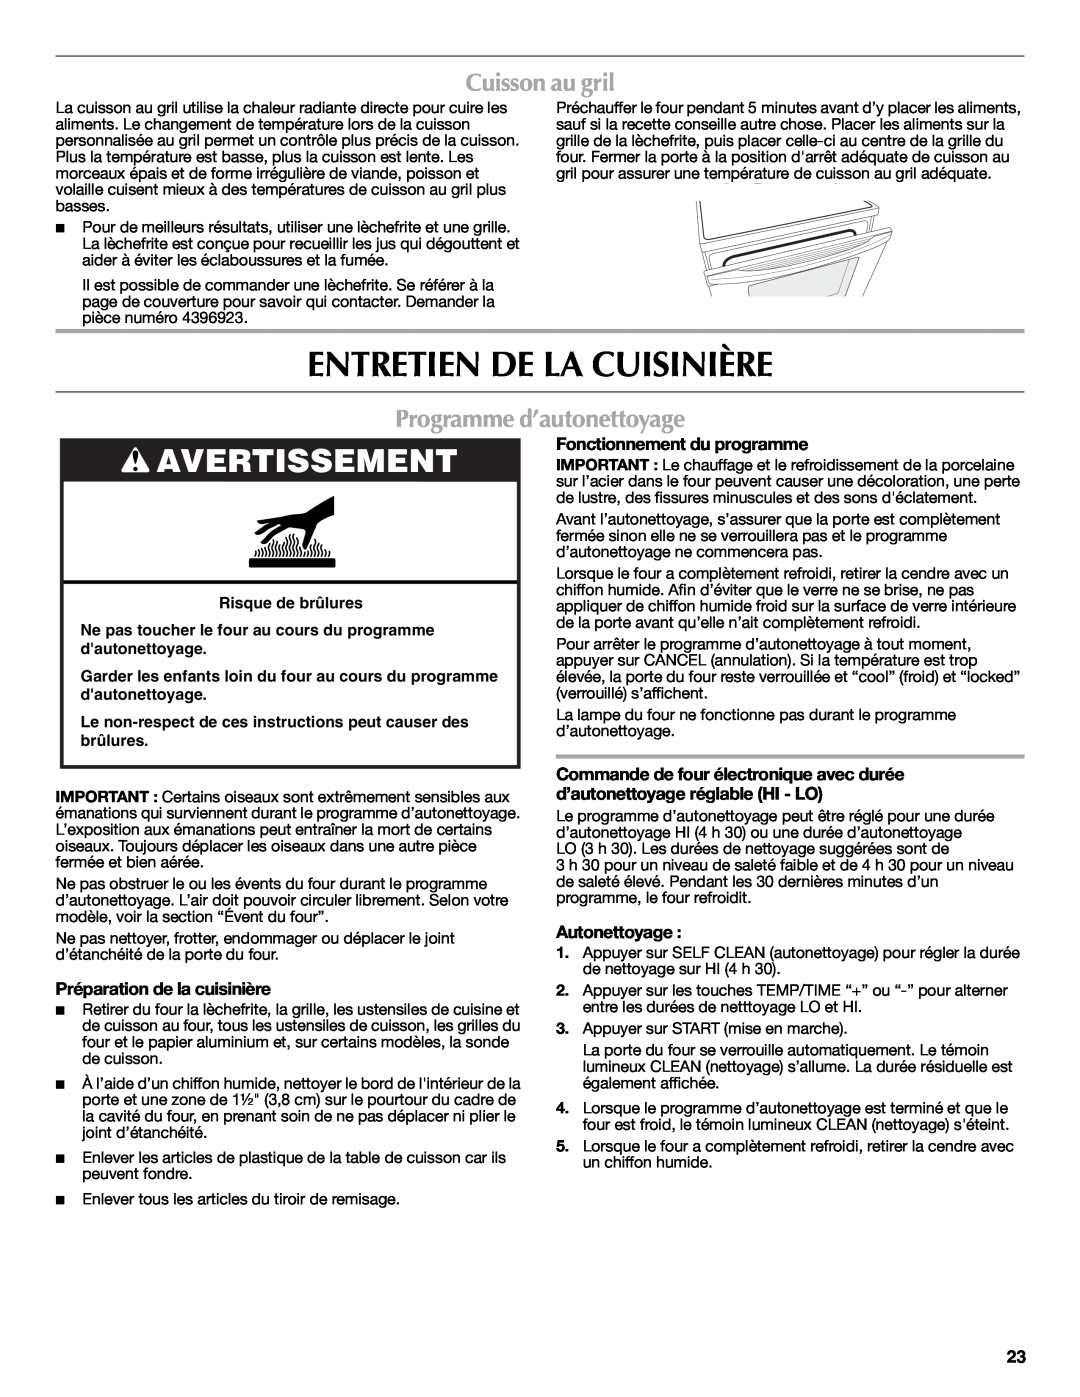 Maytag W10419390A Entretien De La Cuisinière, Cuisson au gril, Programme d’autonettoyage, Fonctionnement du programme 